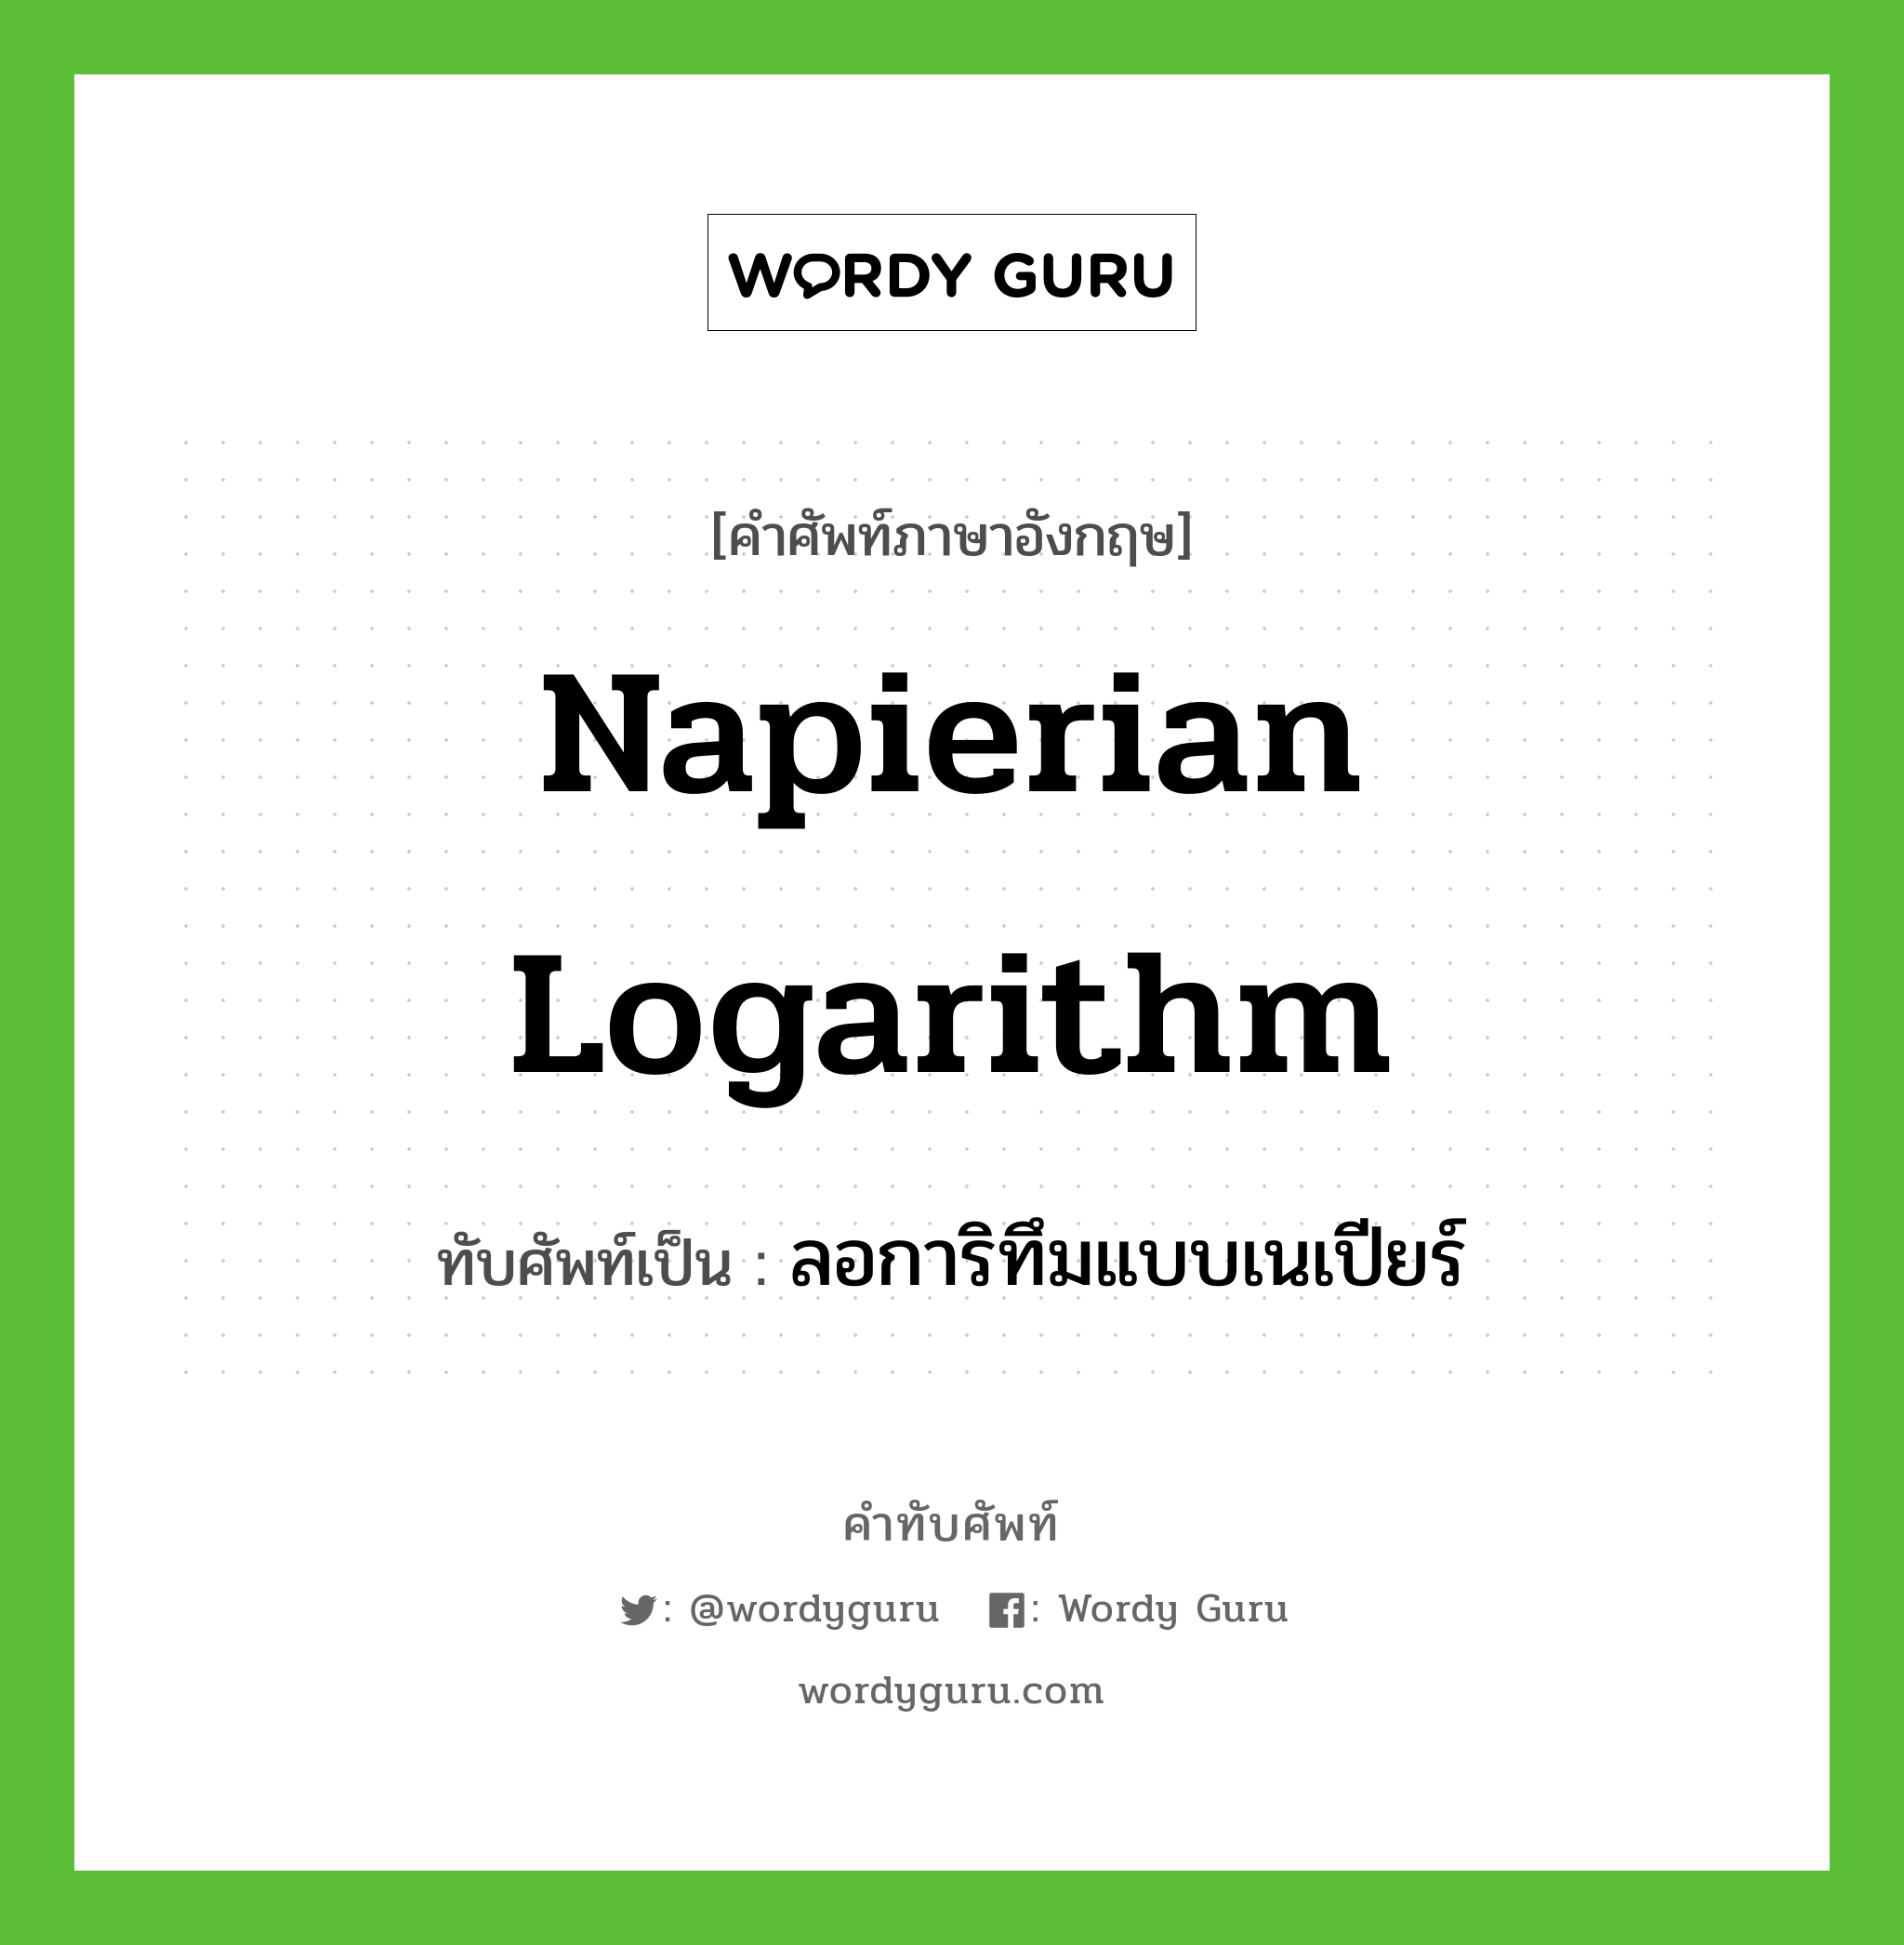 Napierian logarithm เขียนเป็นคำไทยว่าอะไร?, คำศัพท์ภาษาอังกฤษ Napierian logarithm ทับศัพท์เป็น ลอการิทึมแบบเนเปียร์